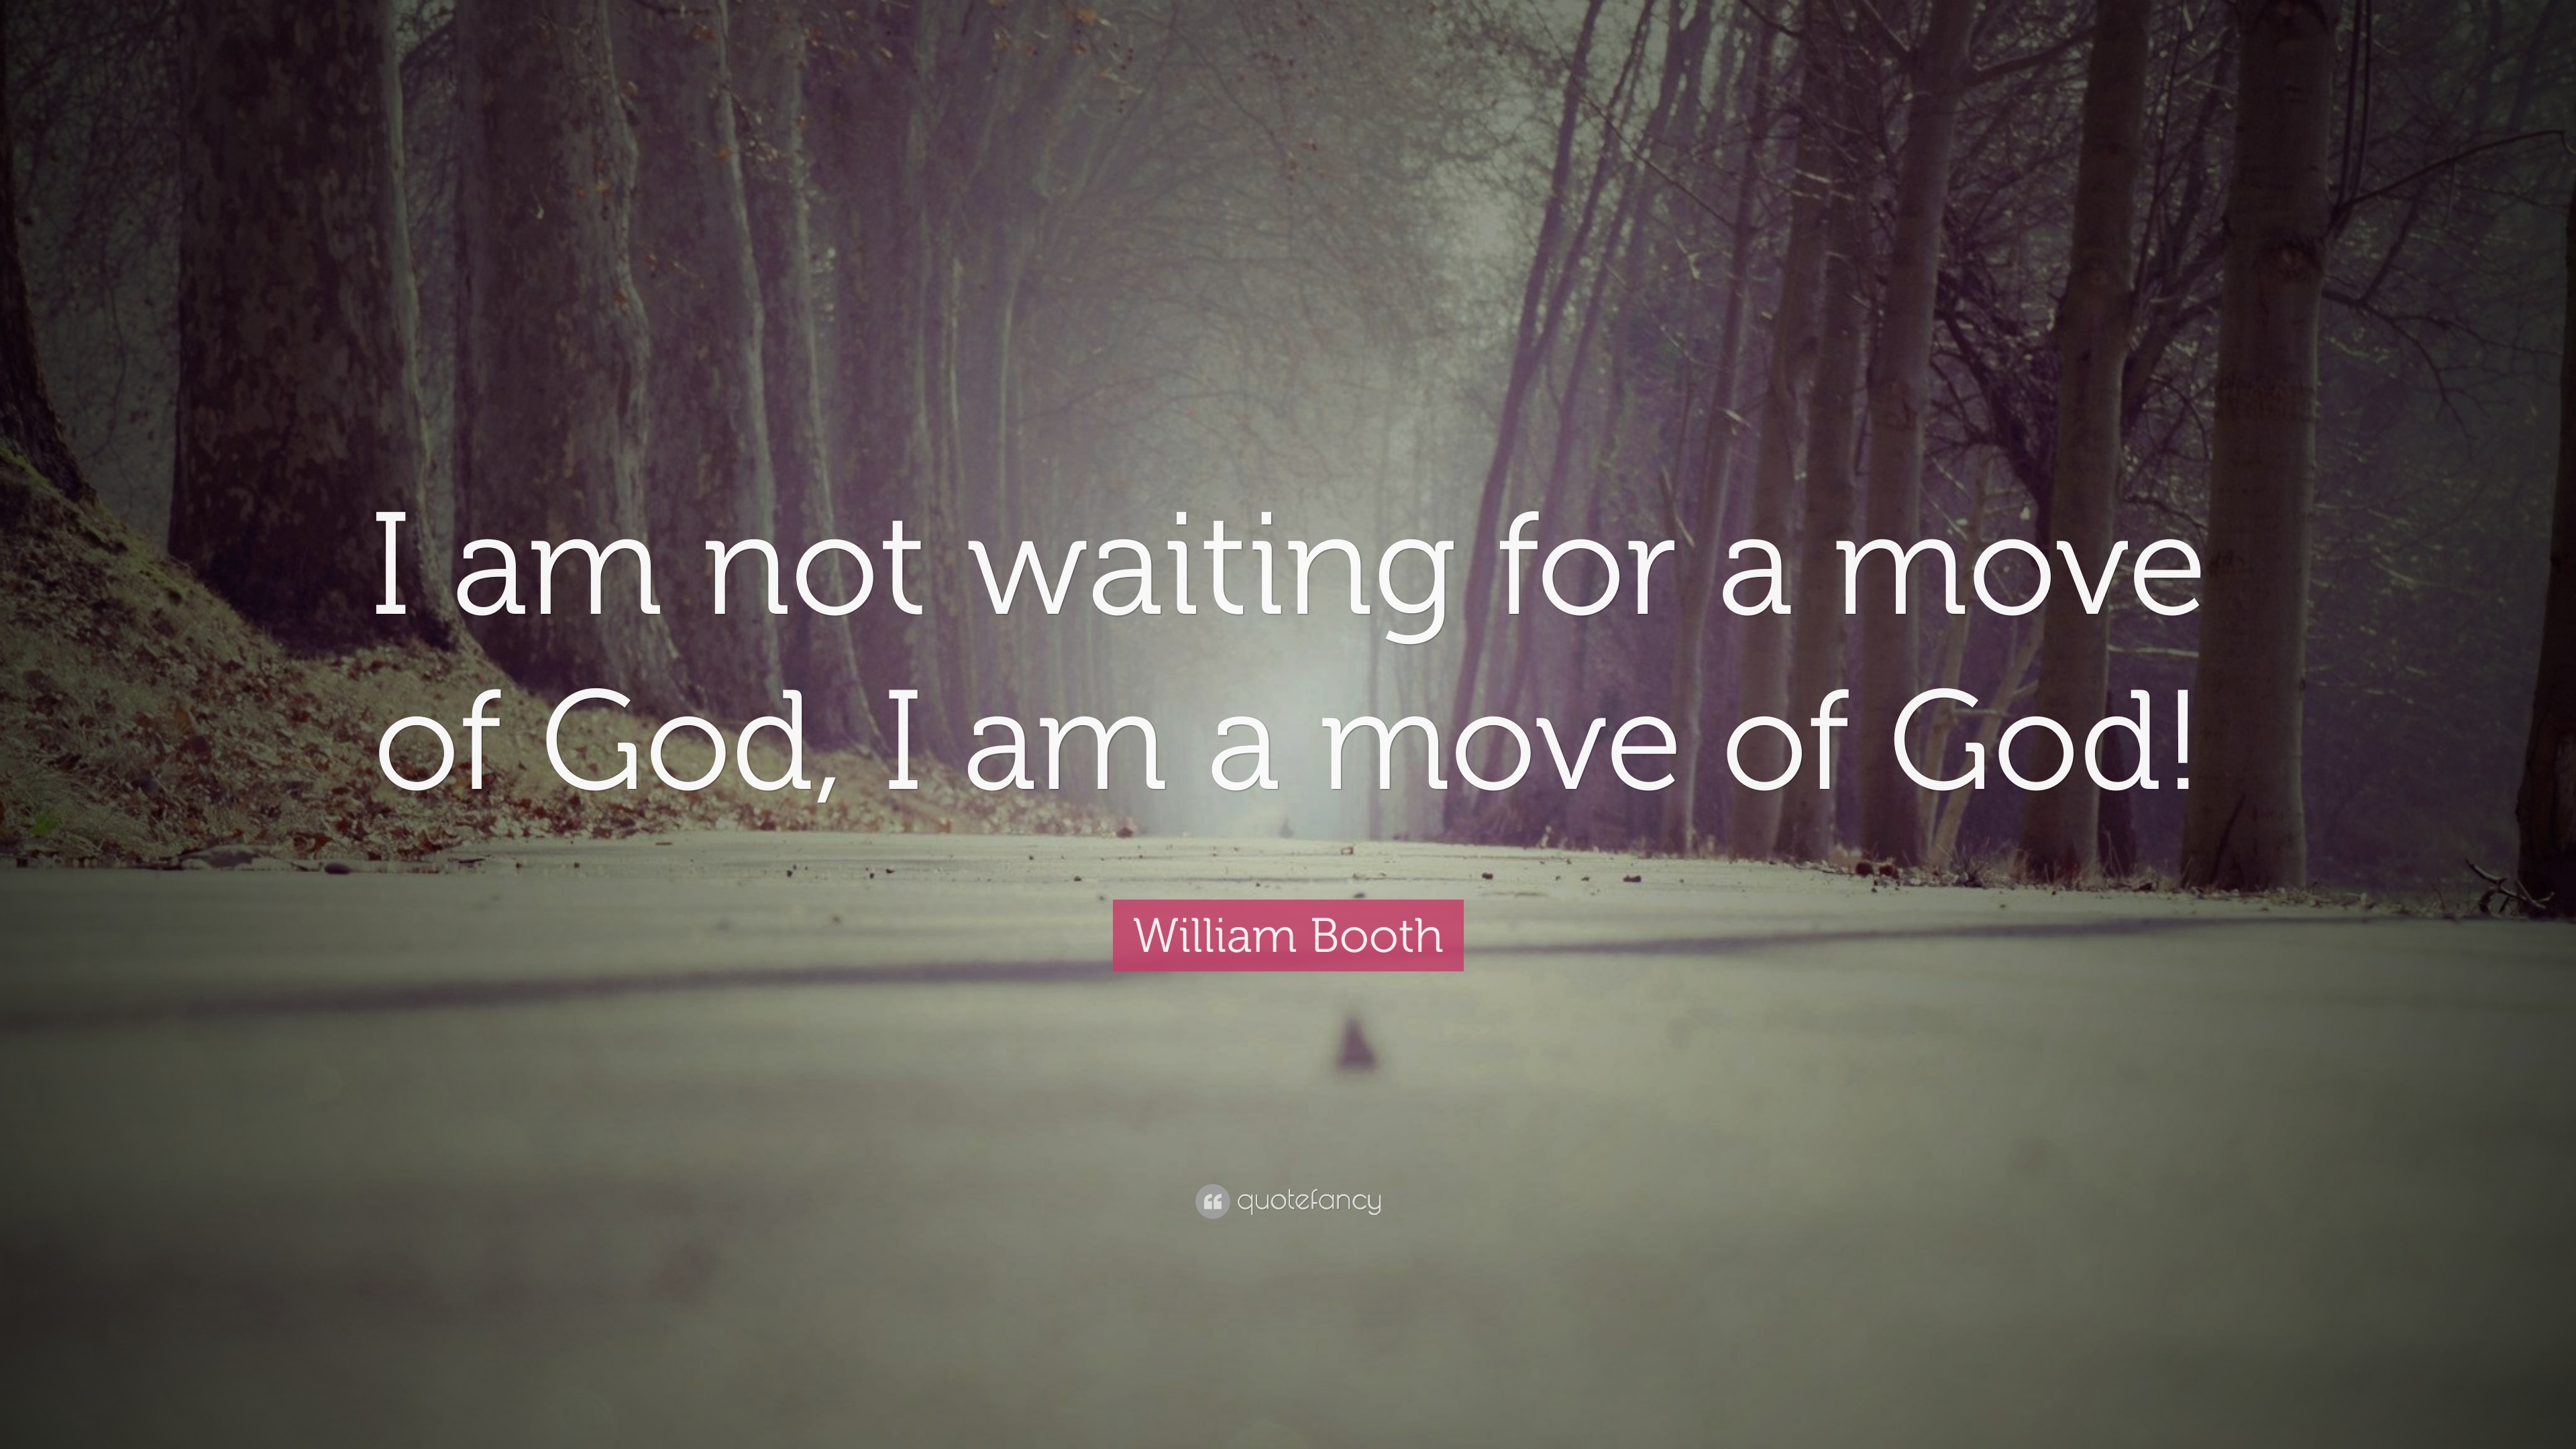 40 Best William Booth Quotes